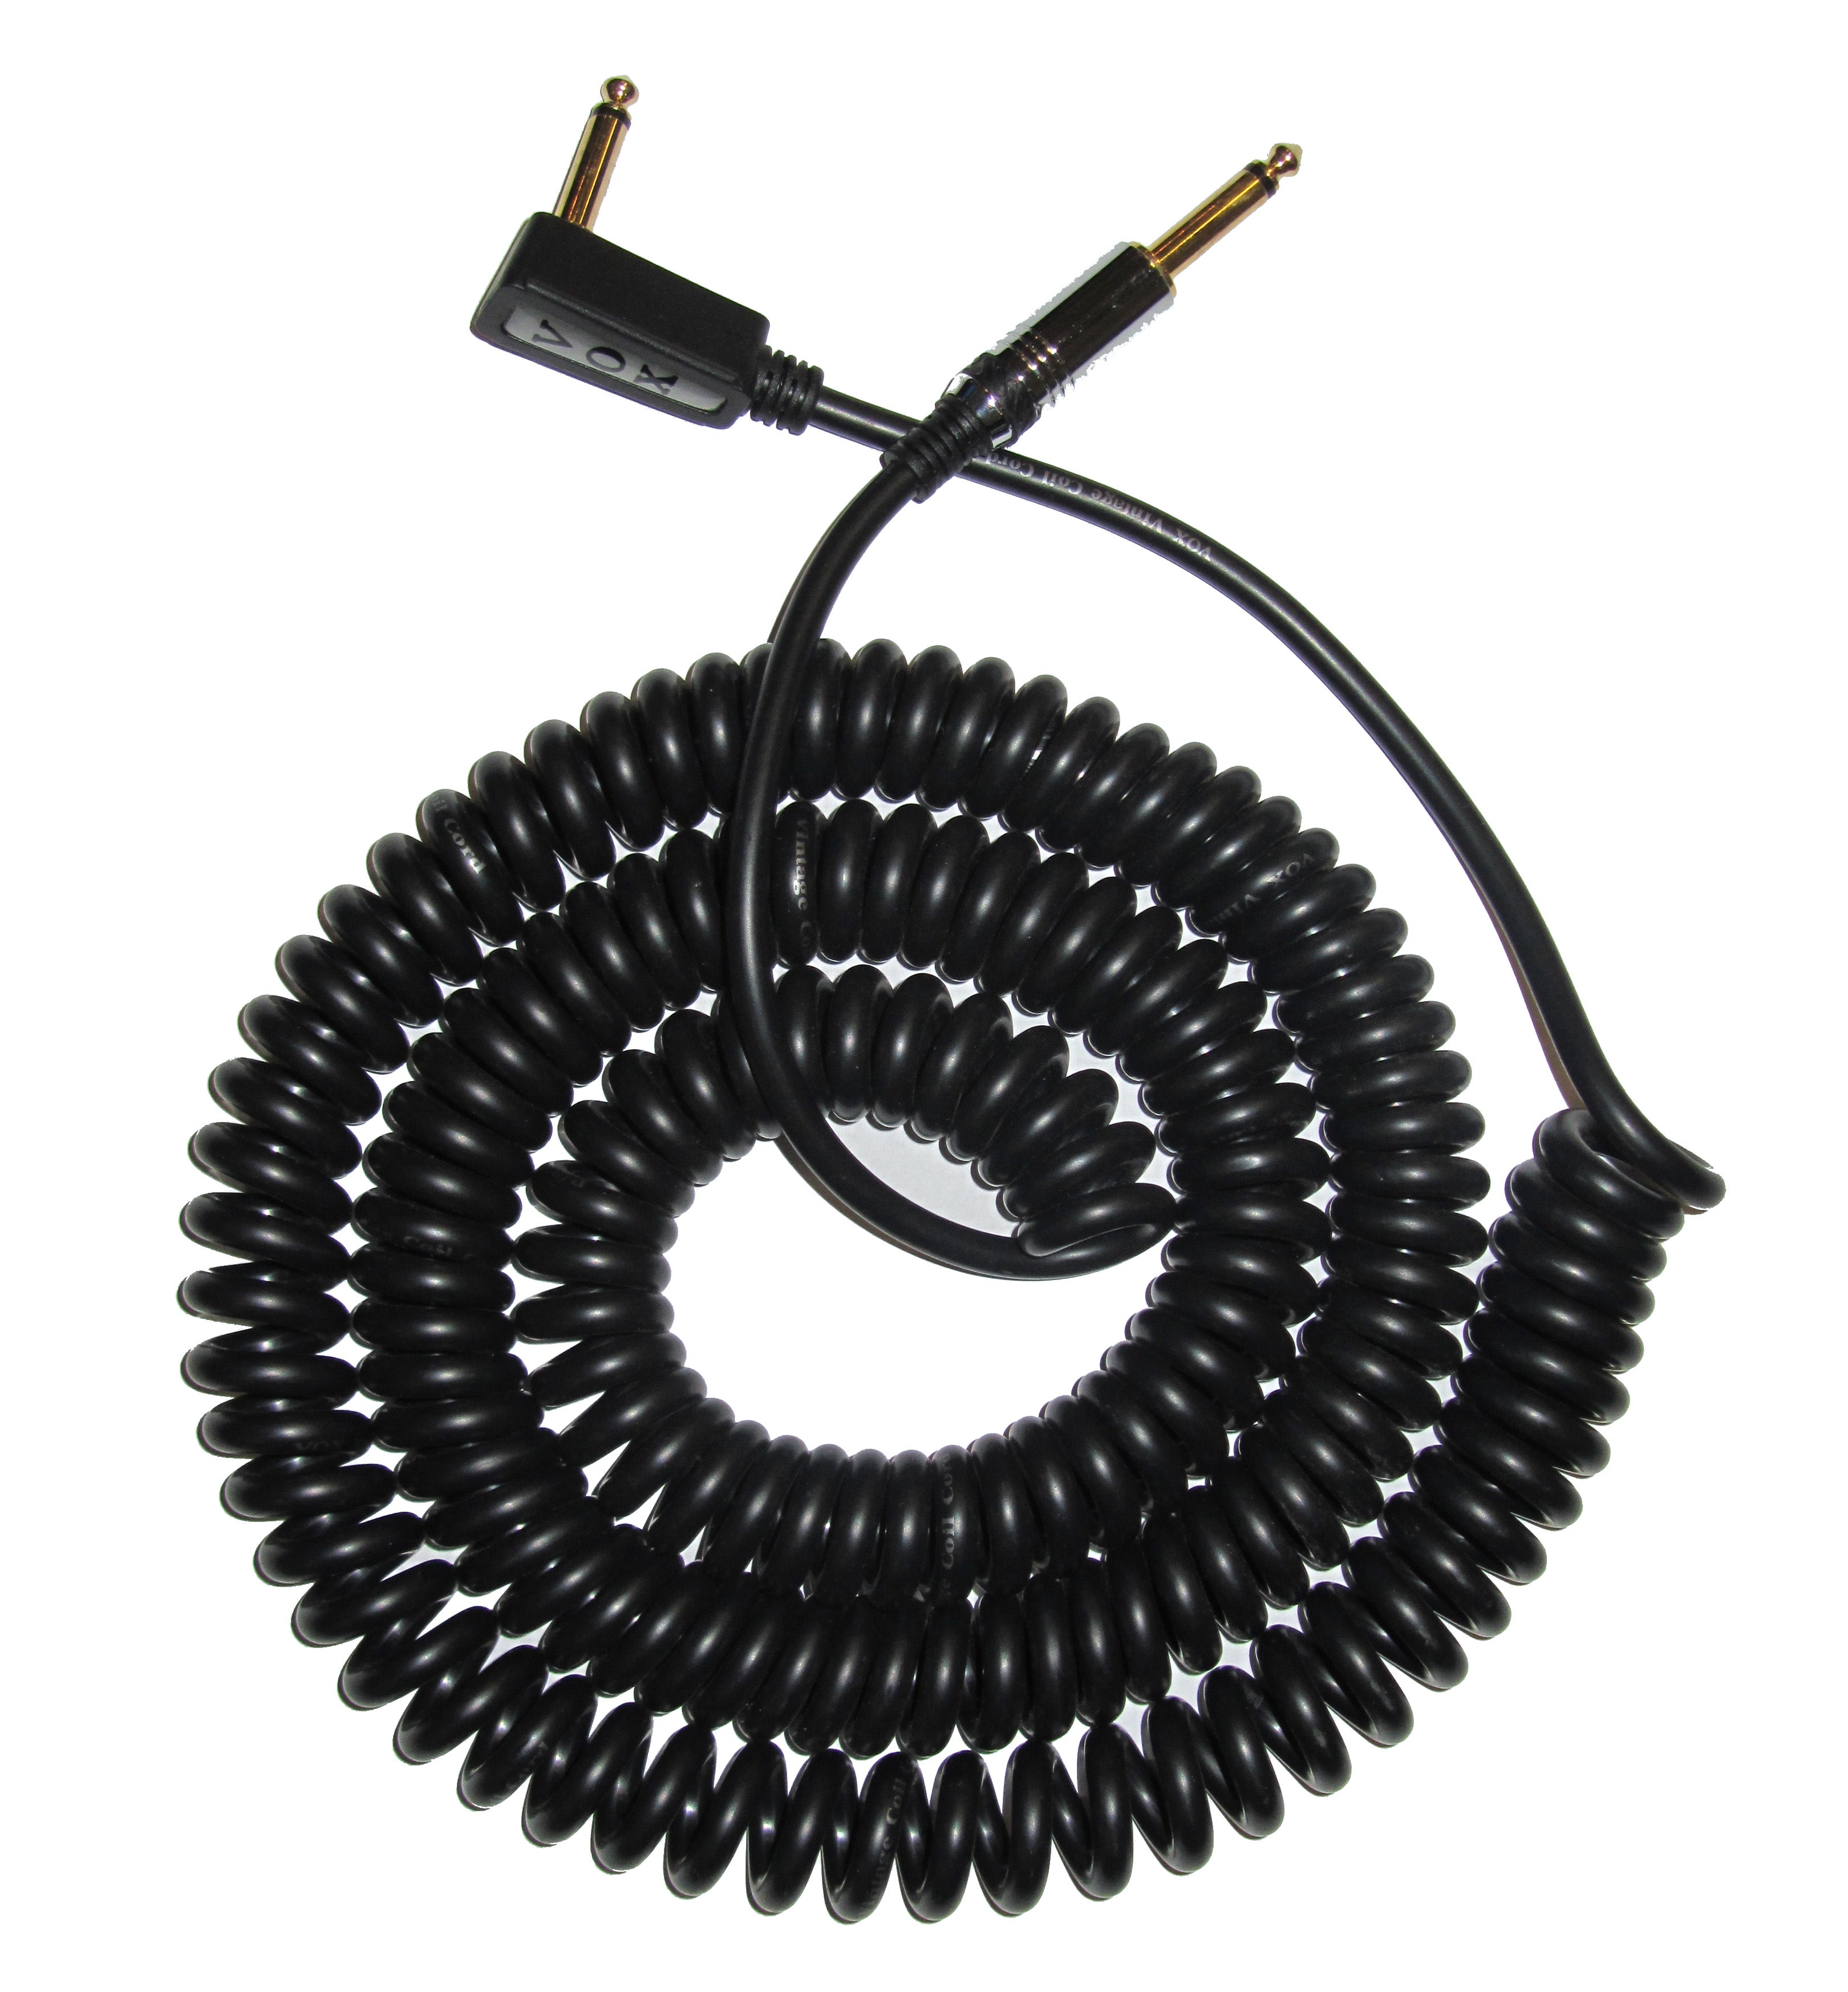 Vox Coil Cable Black 9m - Regent Sounds